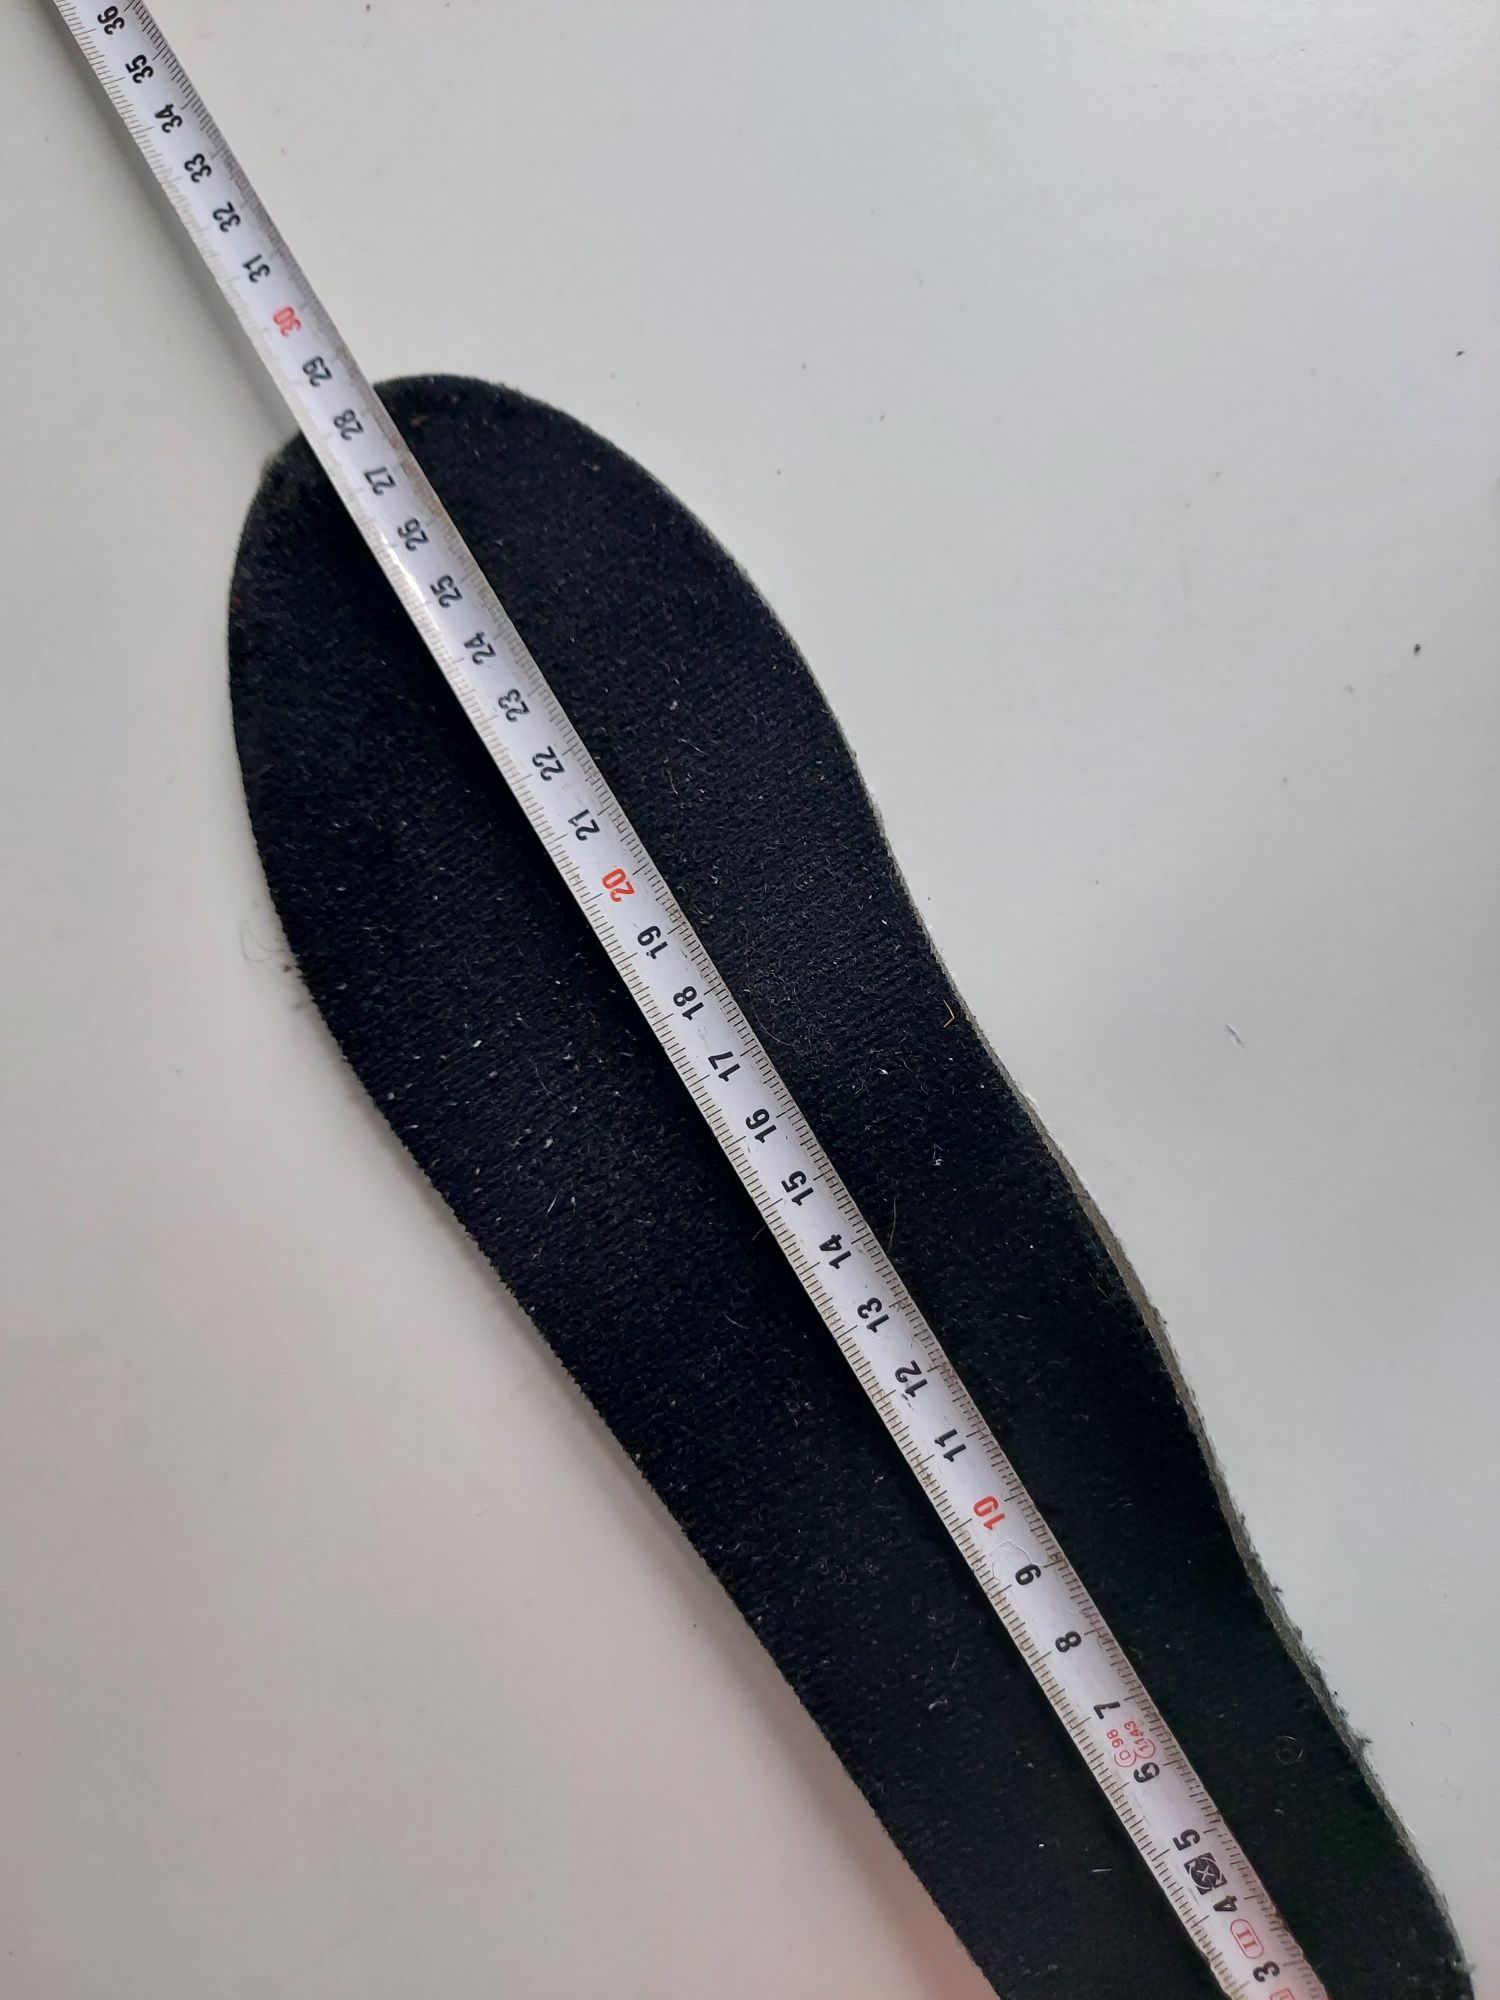 Buty narciarskie SALOMON X WAVE Flex80 rozmiar wkładki 28.5cm